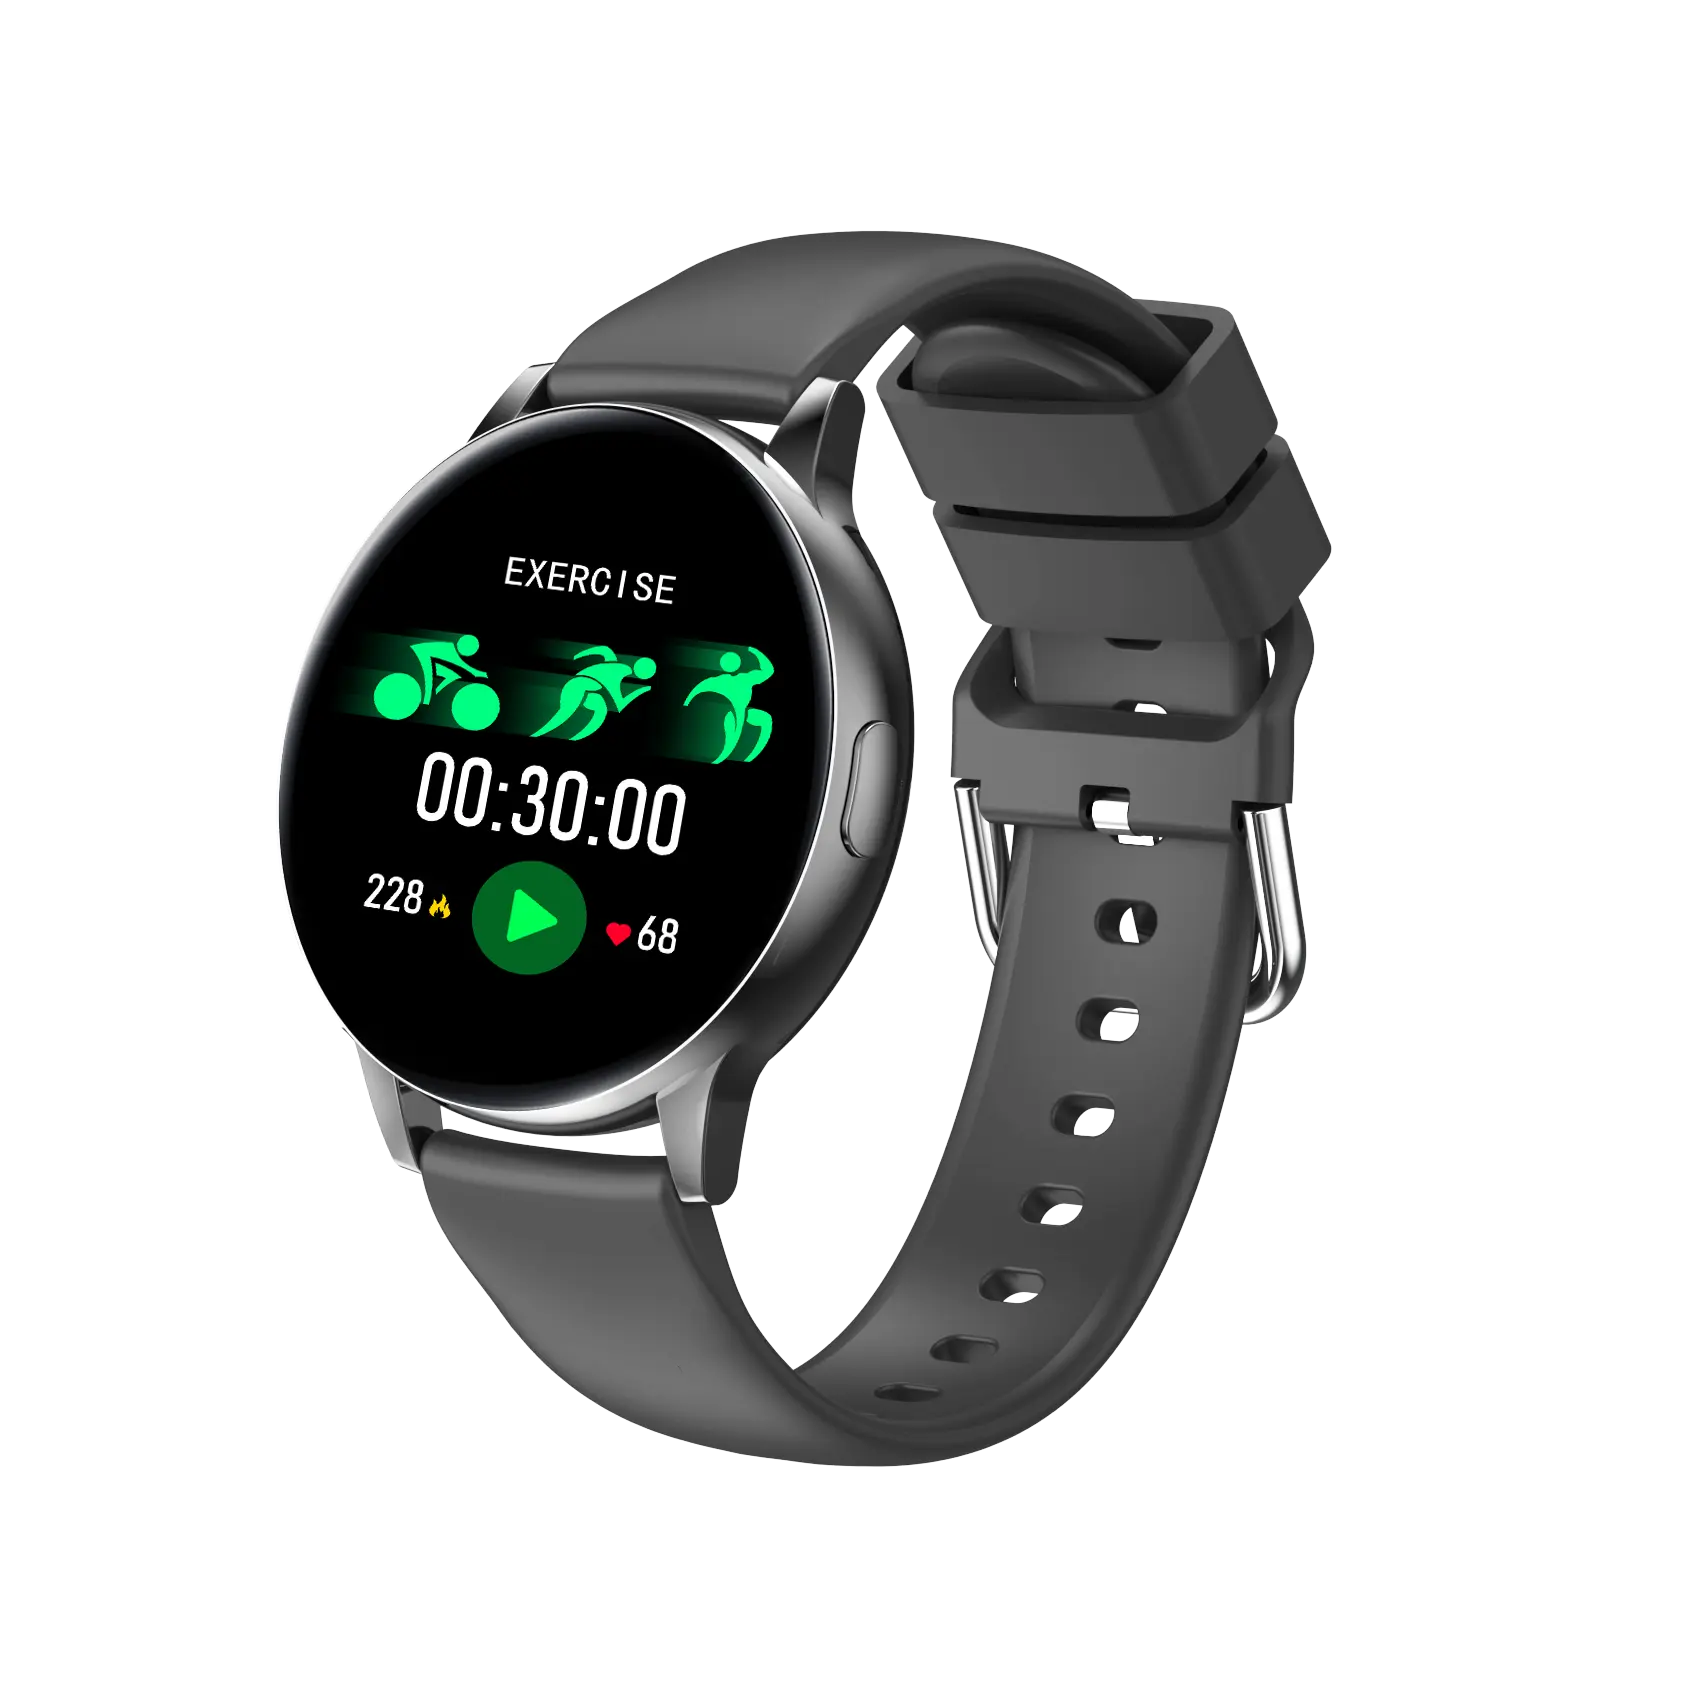 4G elektronik dokunmatik ekran bileklik kospet fiyat sağlık izleme android 7.1 akıllı saat